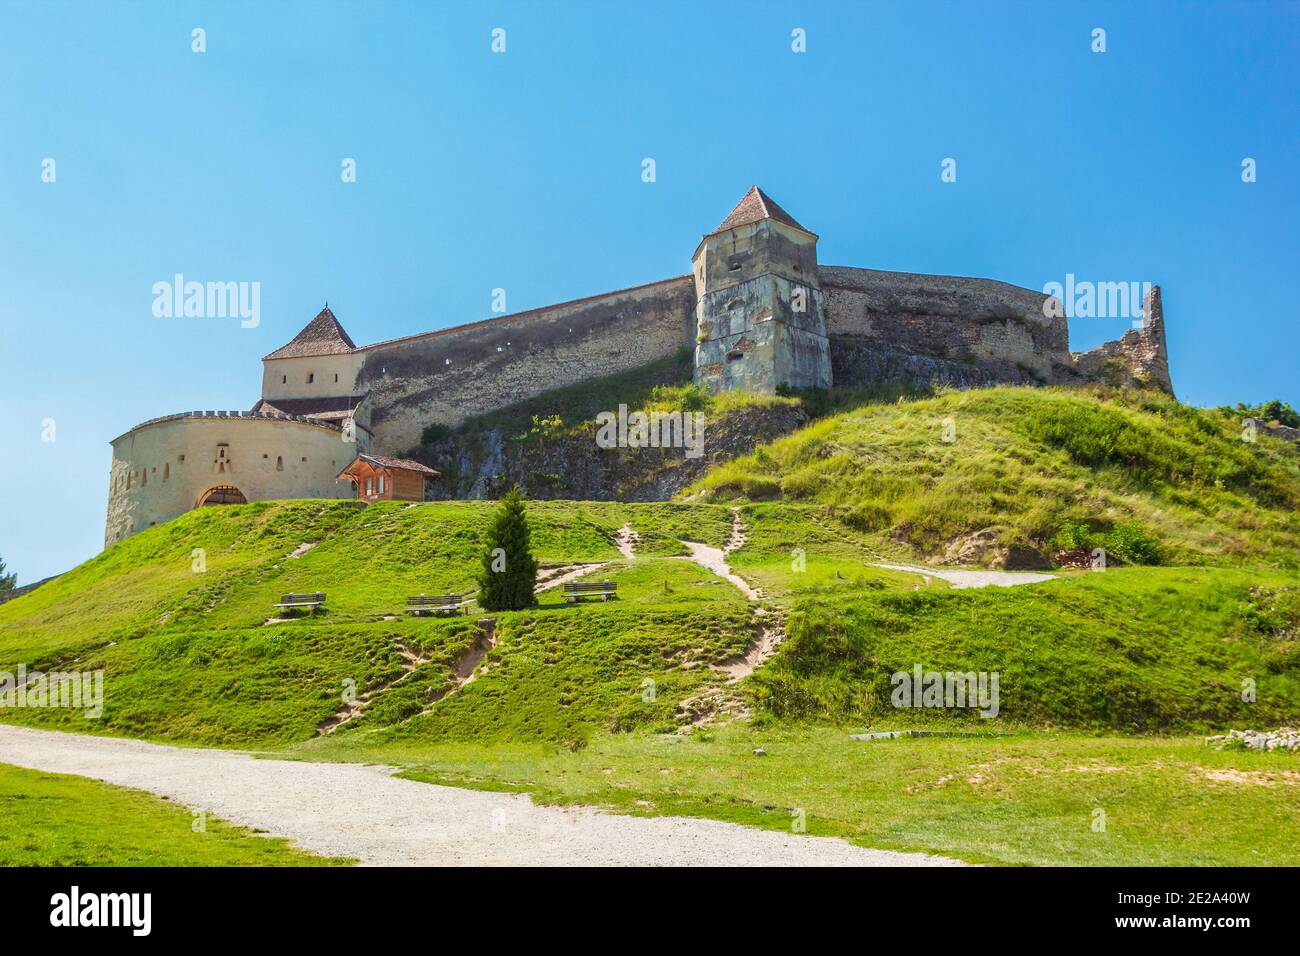 The inner courtyard of the Rasnov castle in Brasov county Stock Photo